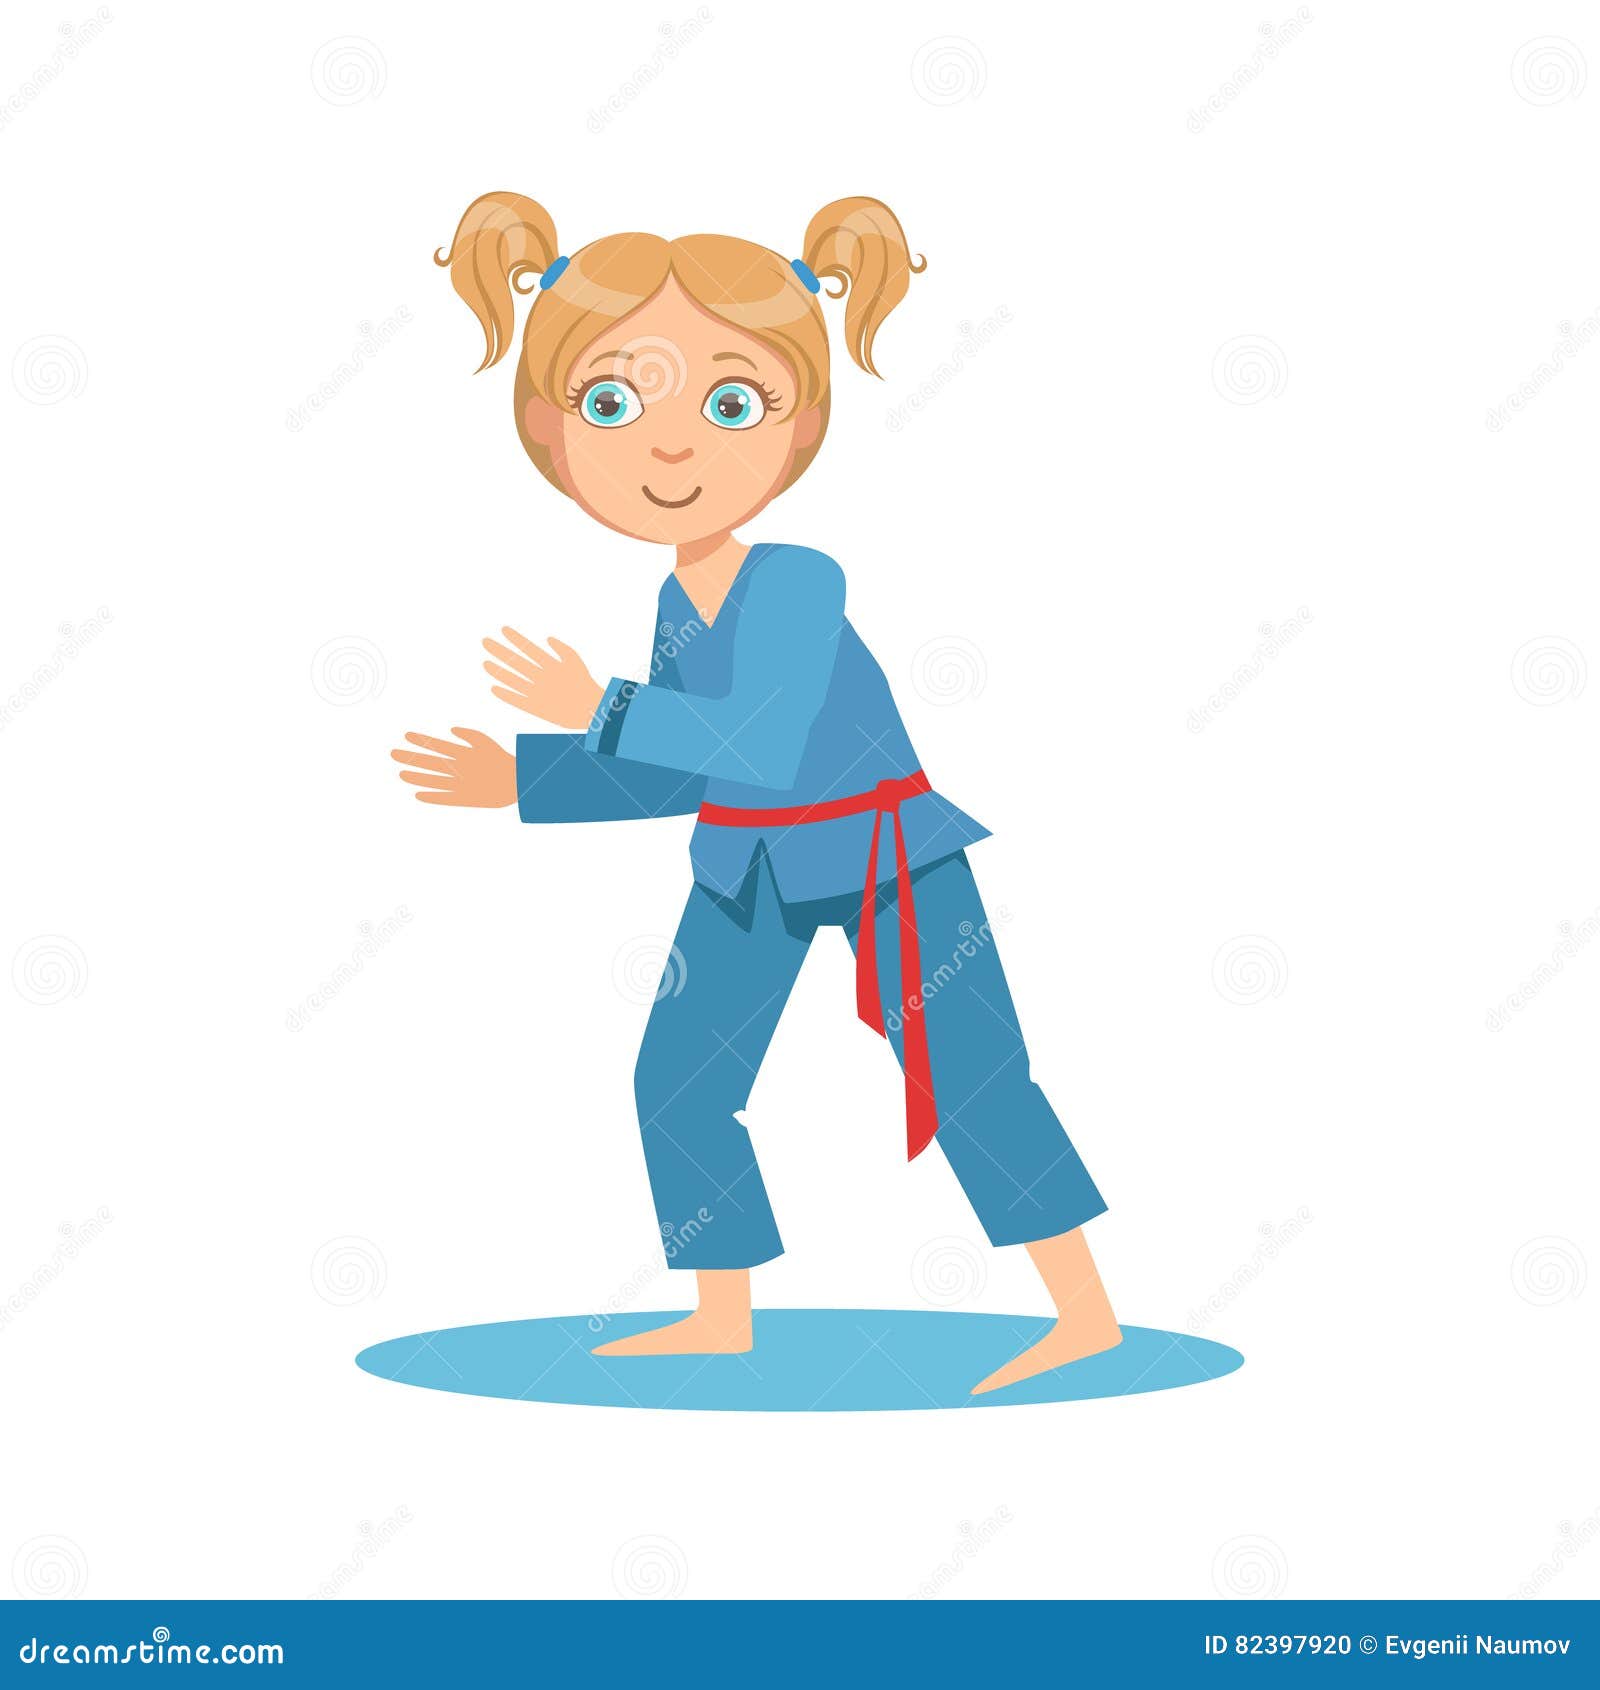 Я спешу на тренировку в кимоно сражаюсь. Карате девочки мультяшные. Рисунок девочка в кимоно каратэ. Дзюдоистка рисунок. Девочка дзюдоистка рисунок.